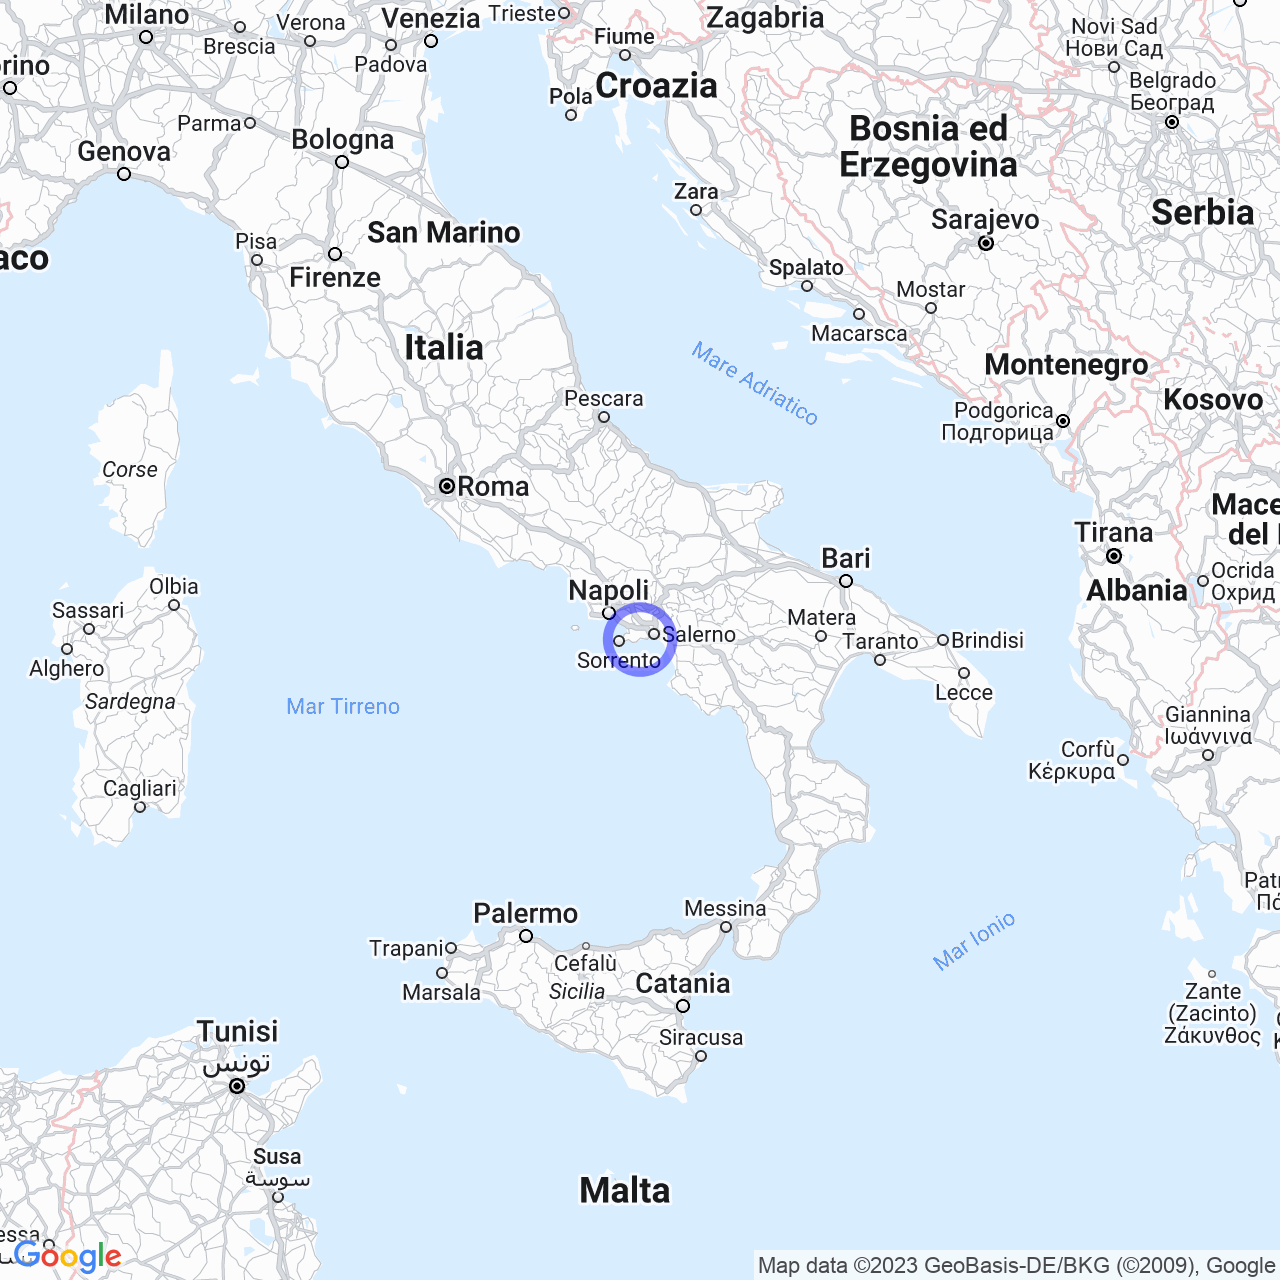 Atrani: the pearl of the Amalfi Coast.